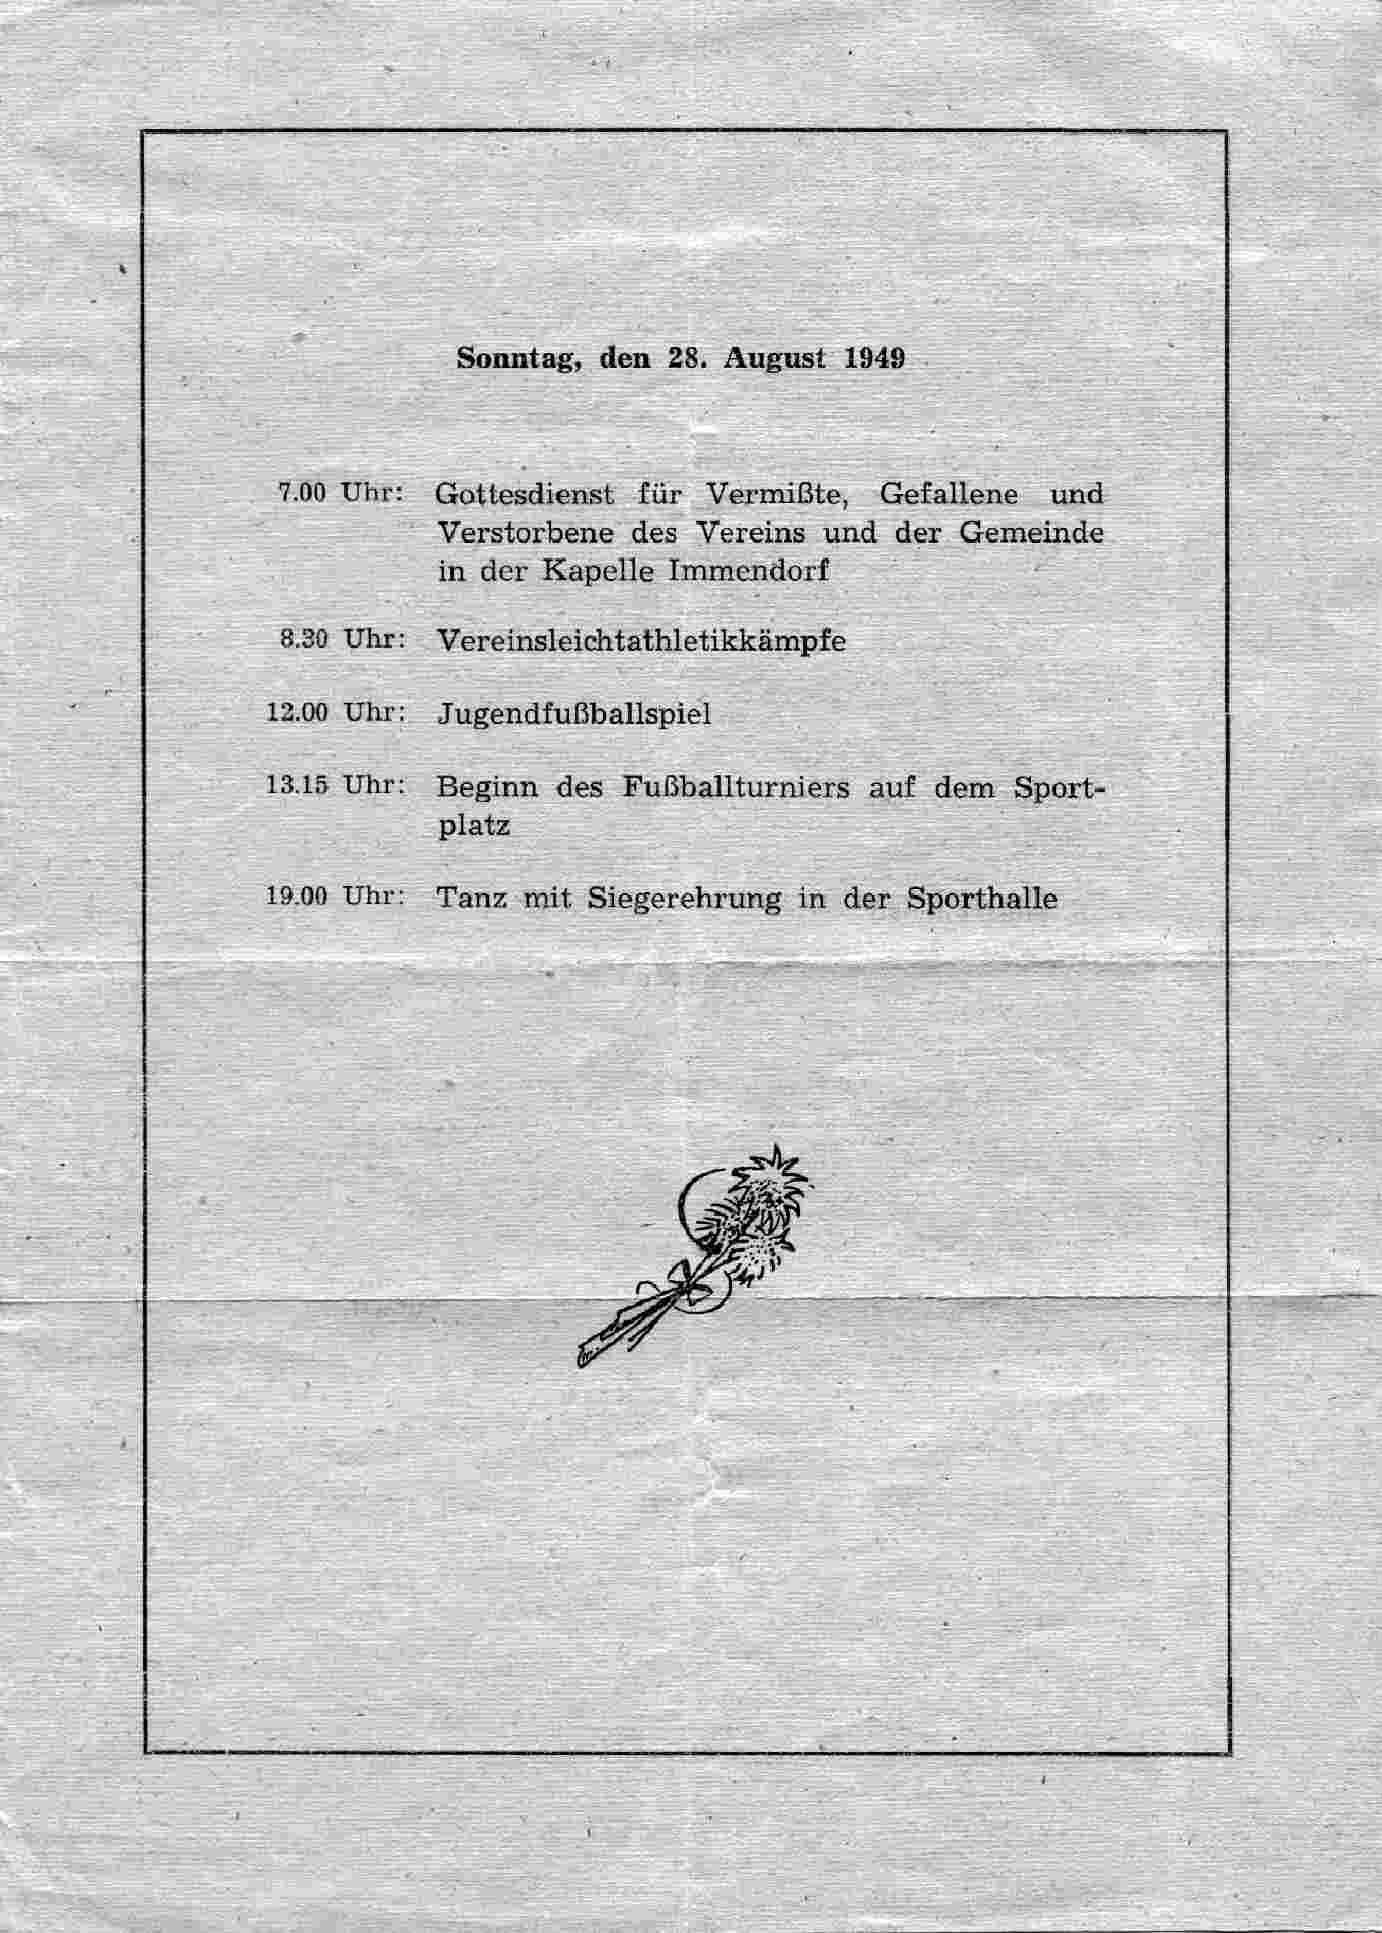 Sonntag Stiftungsfest 50 Jahre im Jahre 1949 